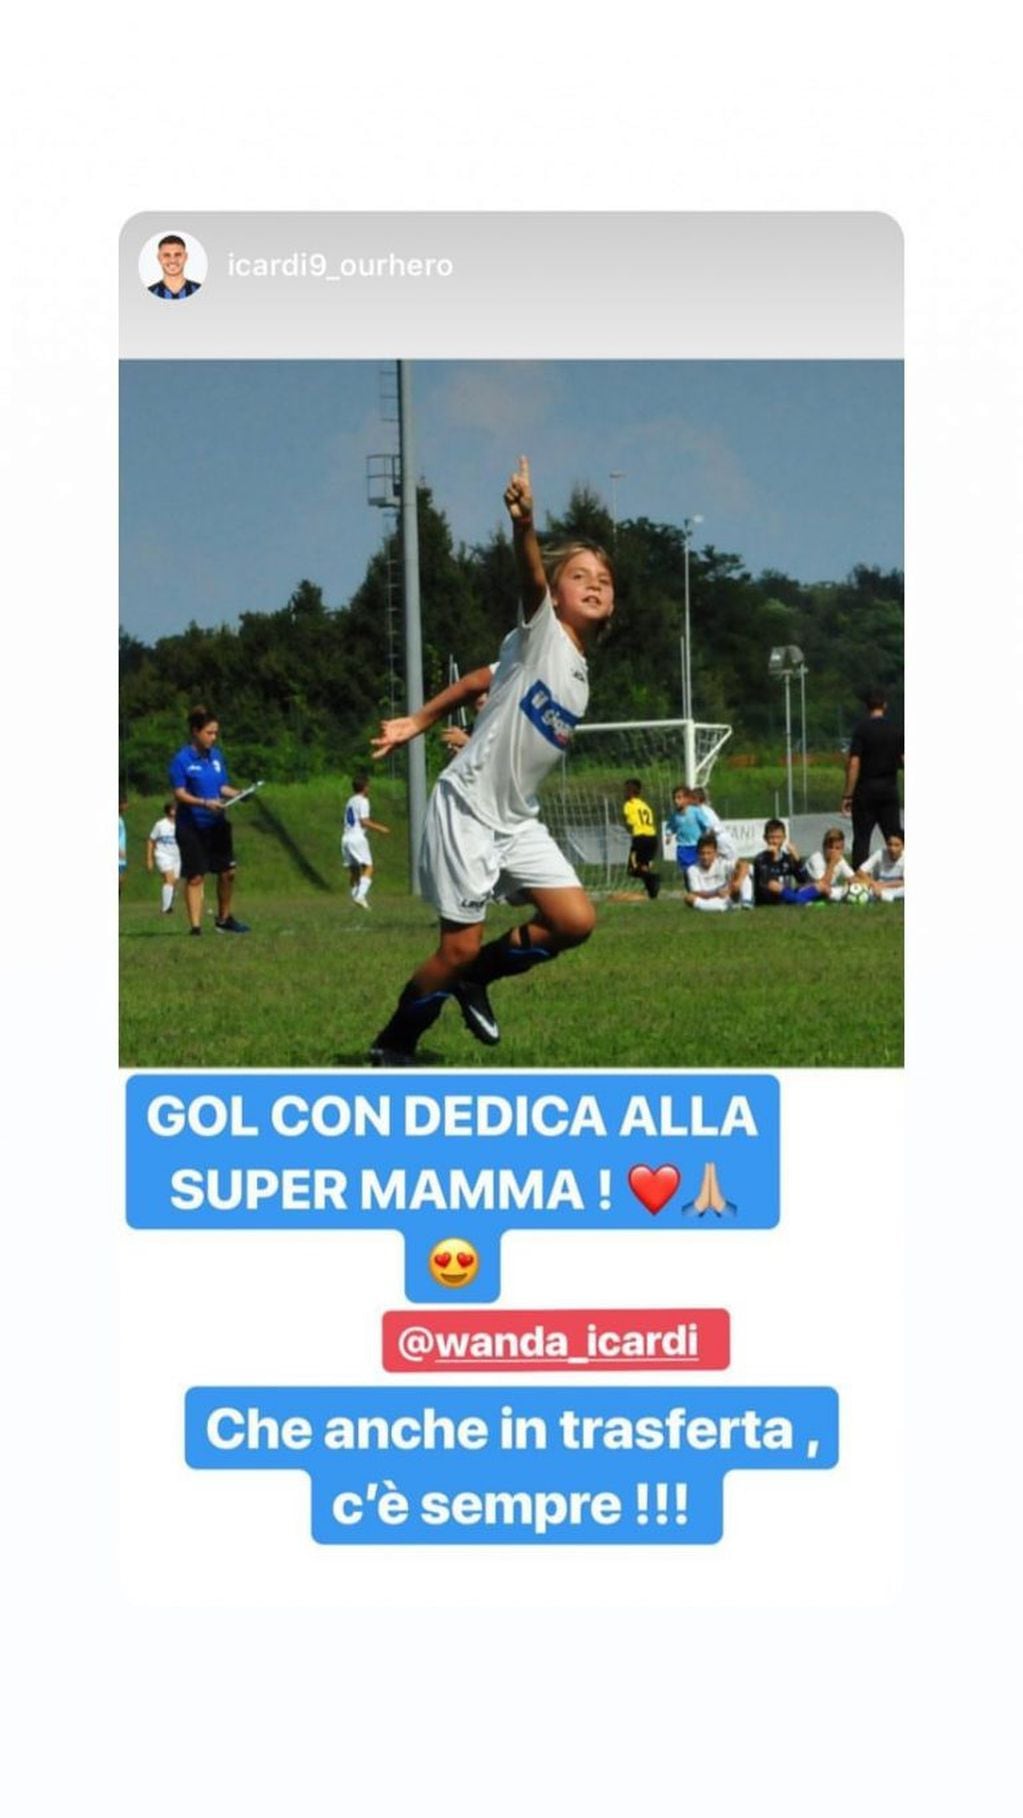 Wanda Nara acompañó a jugar al fútbol a su hijo Valentino y él le dedicó un gol. Instagram/wanda_icardi